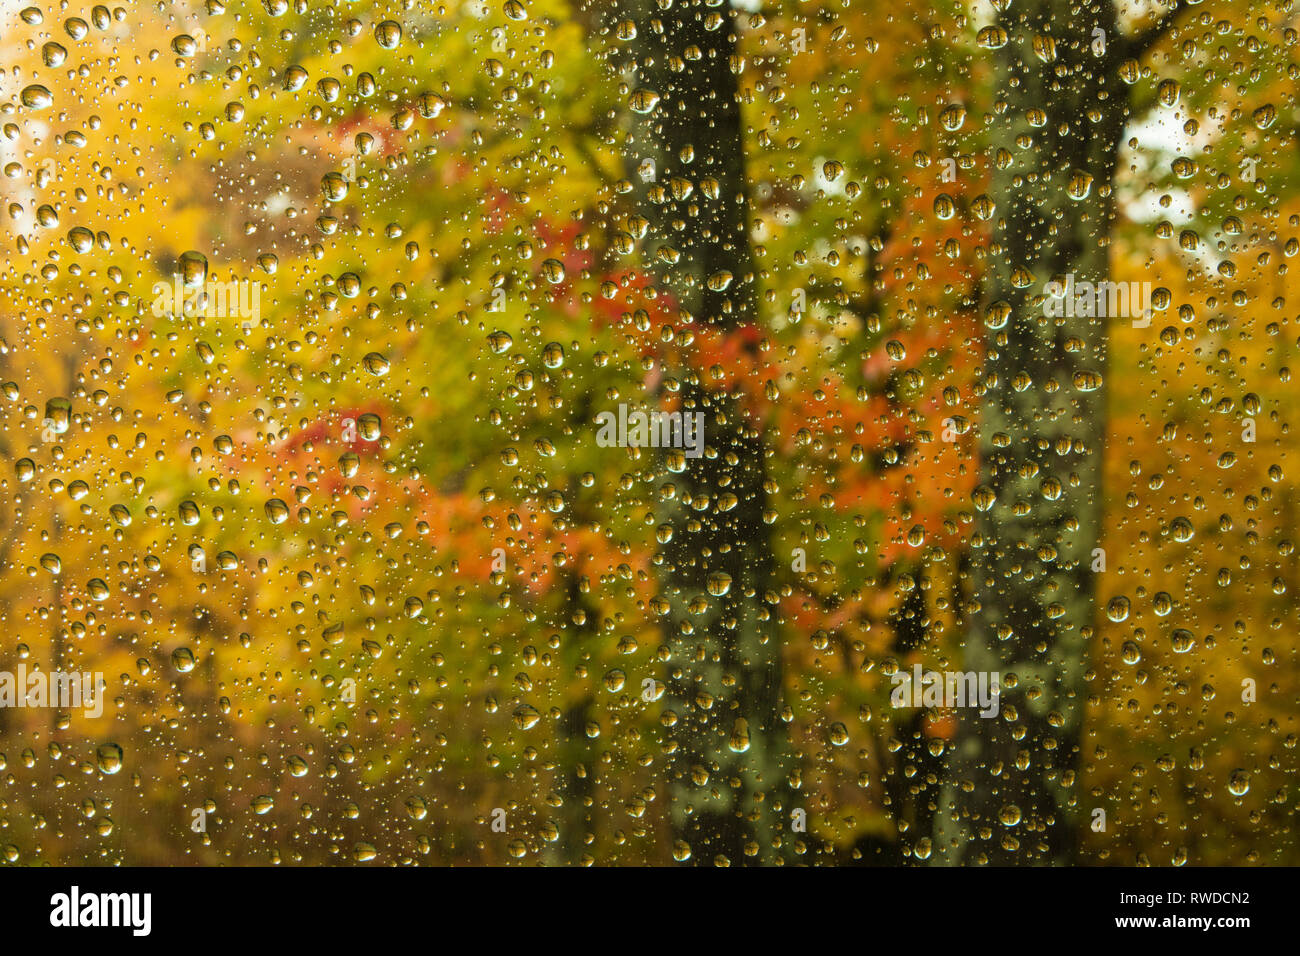 Feuillage d'automne comme Raindropped Vue à travers une fenêtre. Brazeau, WI. Octobre 2018 Banque D'Images